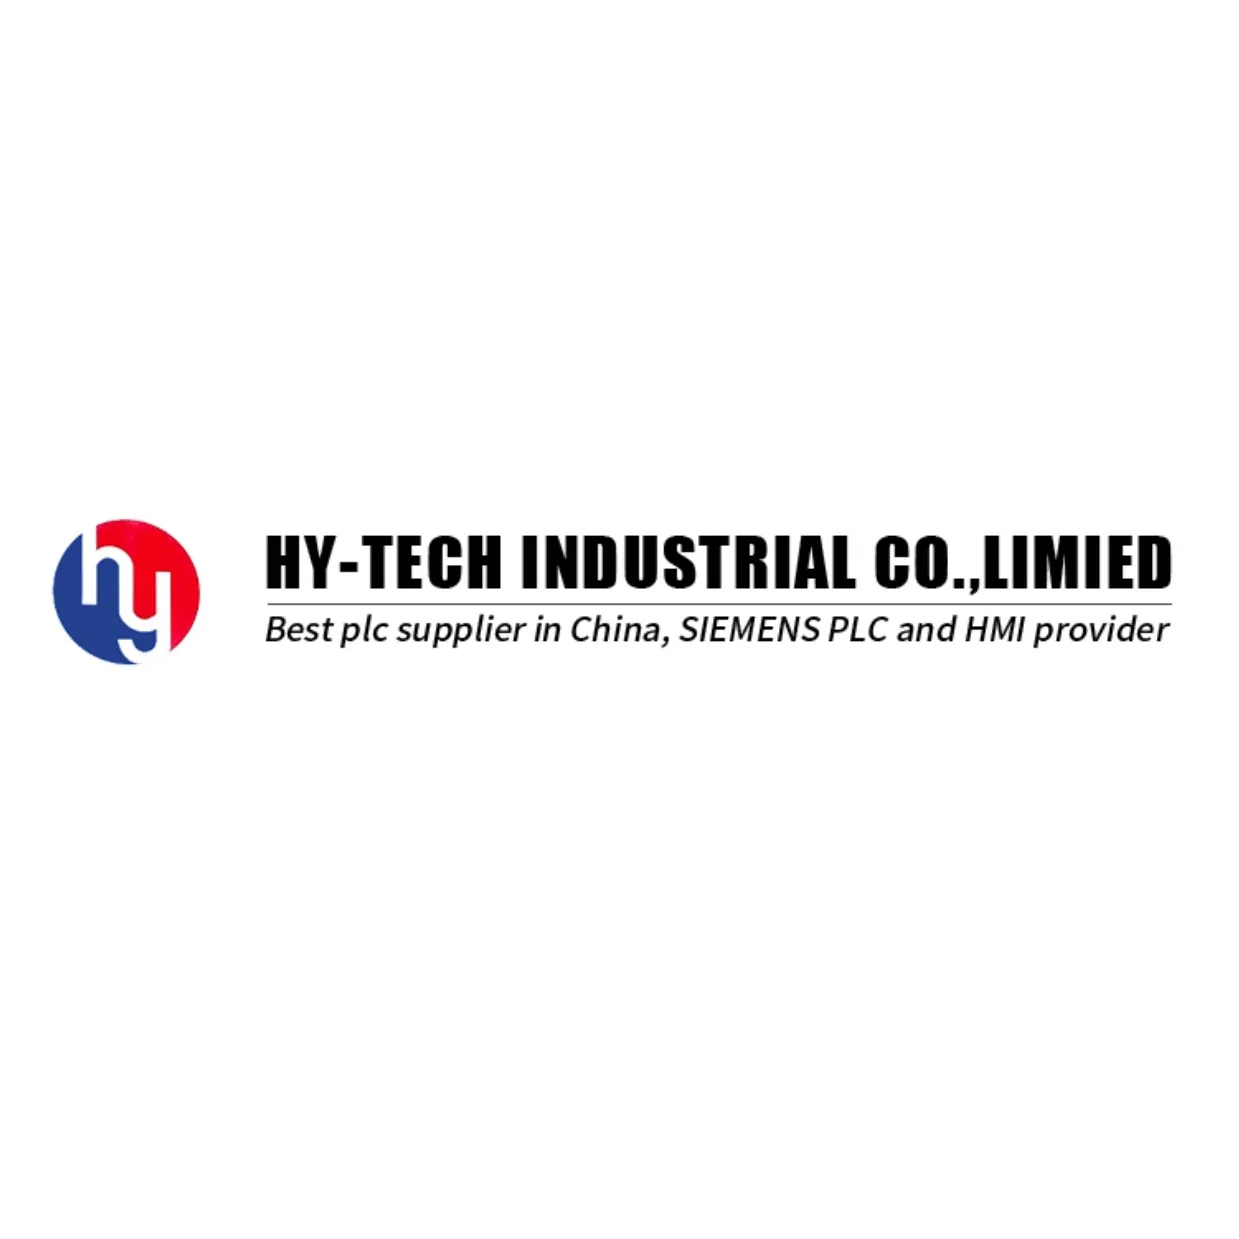 يدعم HYTECH برنامج PLC المخصص, يوفر خدمات برمجة PLC ، تصميم مشروع الأتمتة الكهربائية